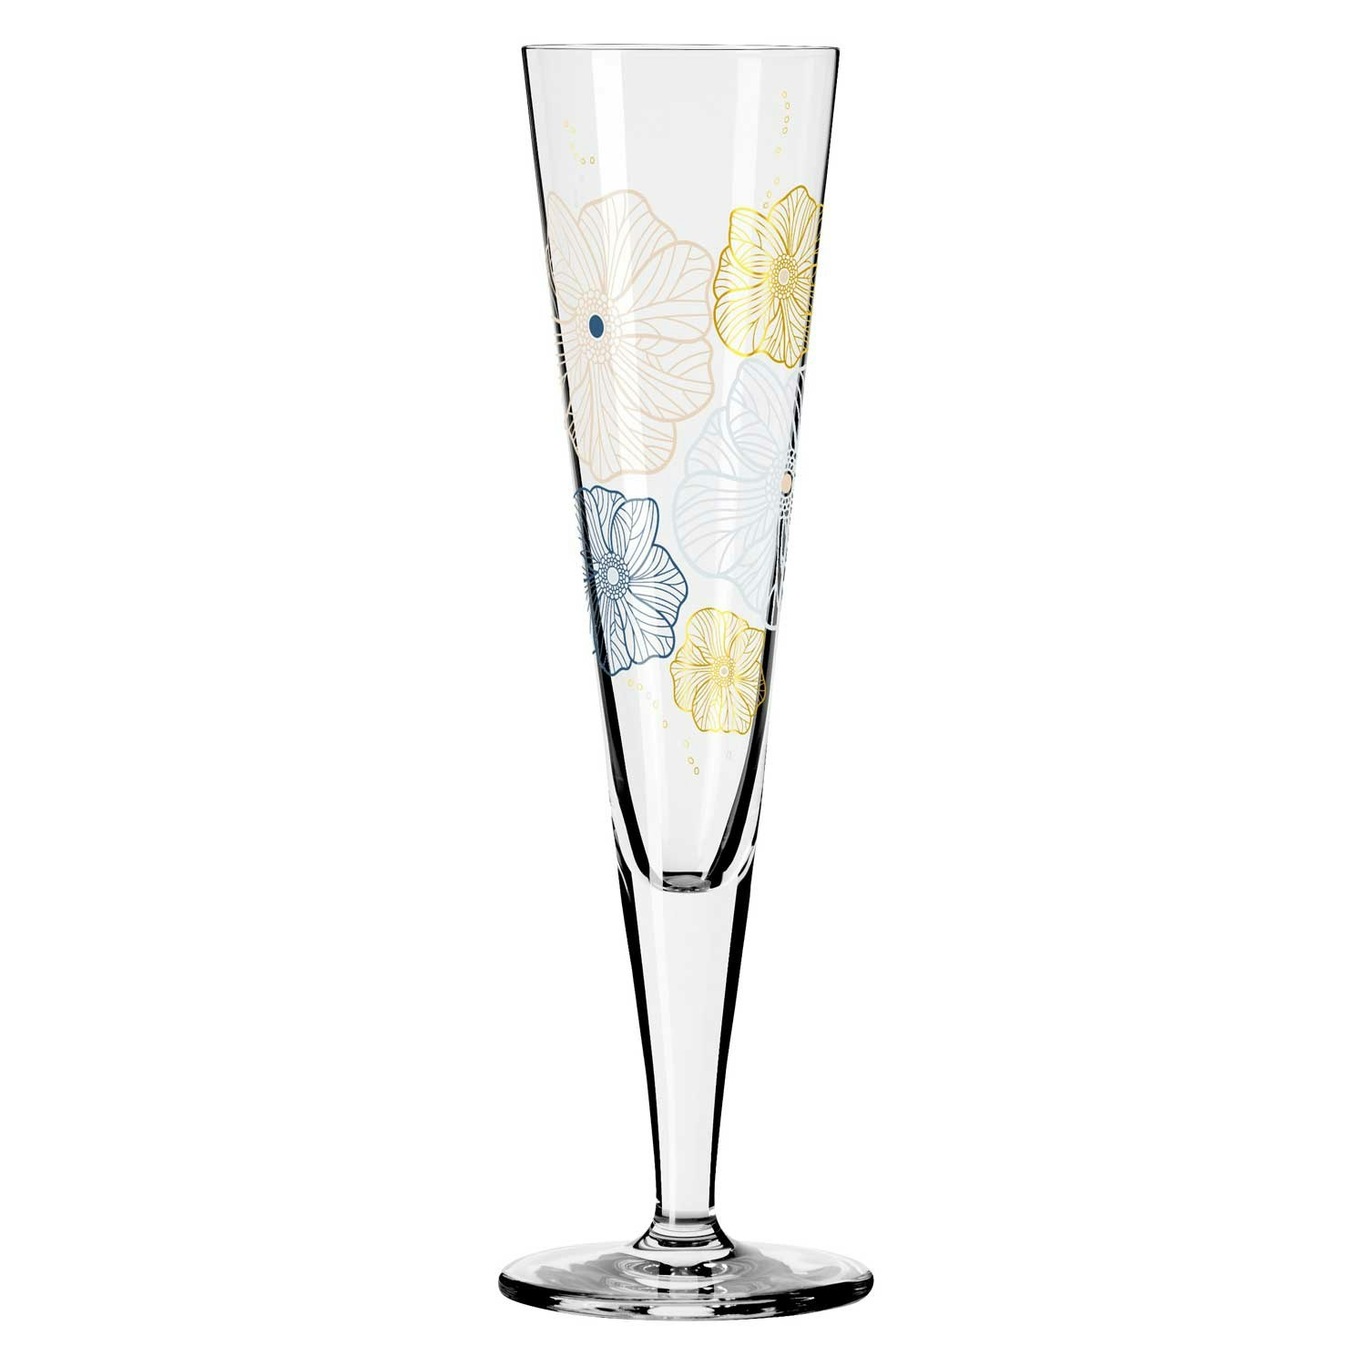 Goldnacht Champagne Glass, NO: 36